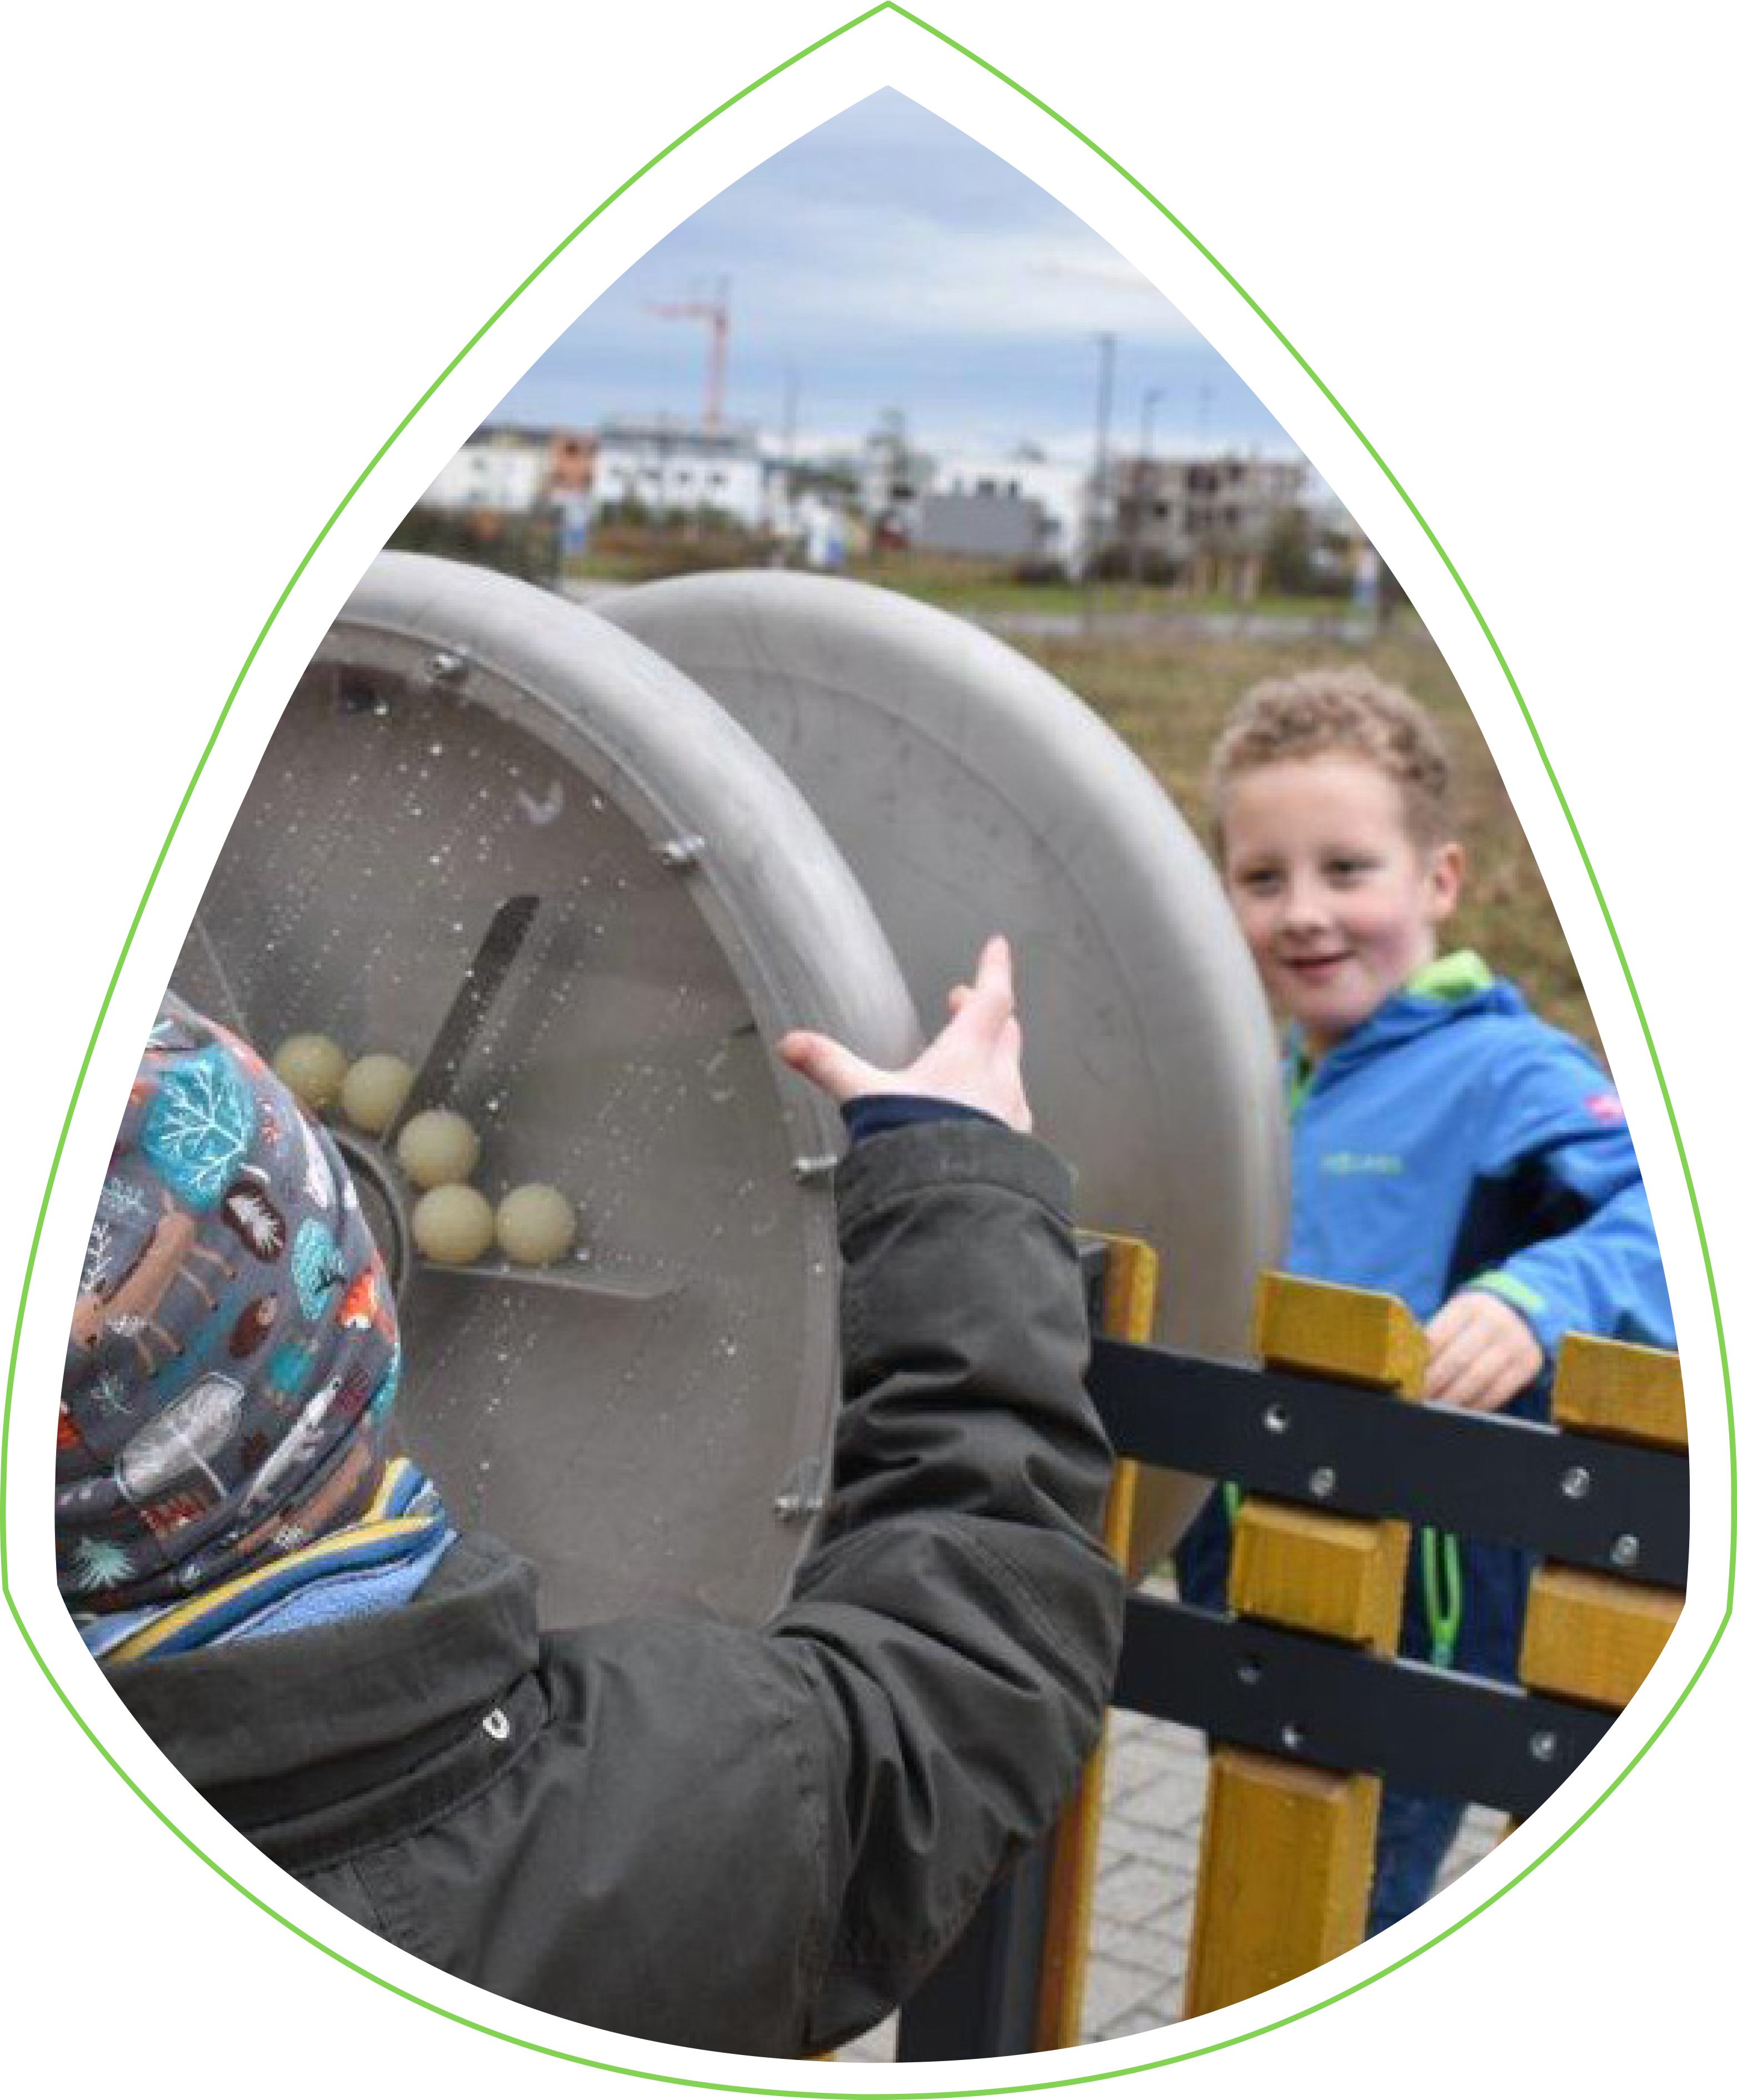 Zwei Kinder spielen am interaktiven Zaun. Hinter dem Zaun steht ein Junge mit einer blauen Jacke. Vor dem Zaun ein Kind, das eine Mütze mit Tier-Muster trägt. Beide drehen an einem Rad, in dem sich weiße Bälle drehen. 